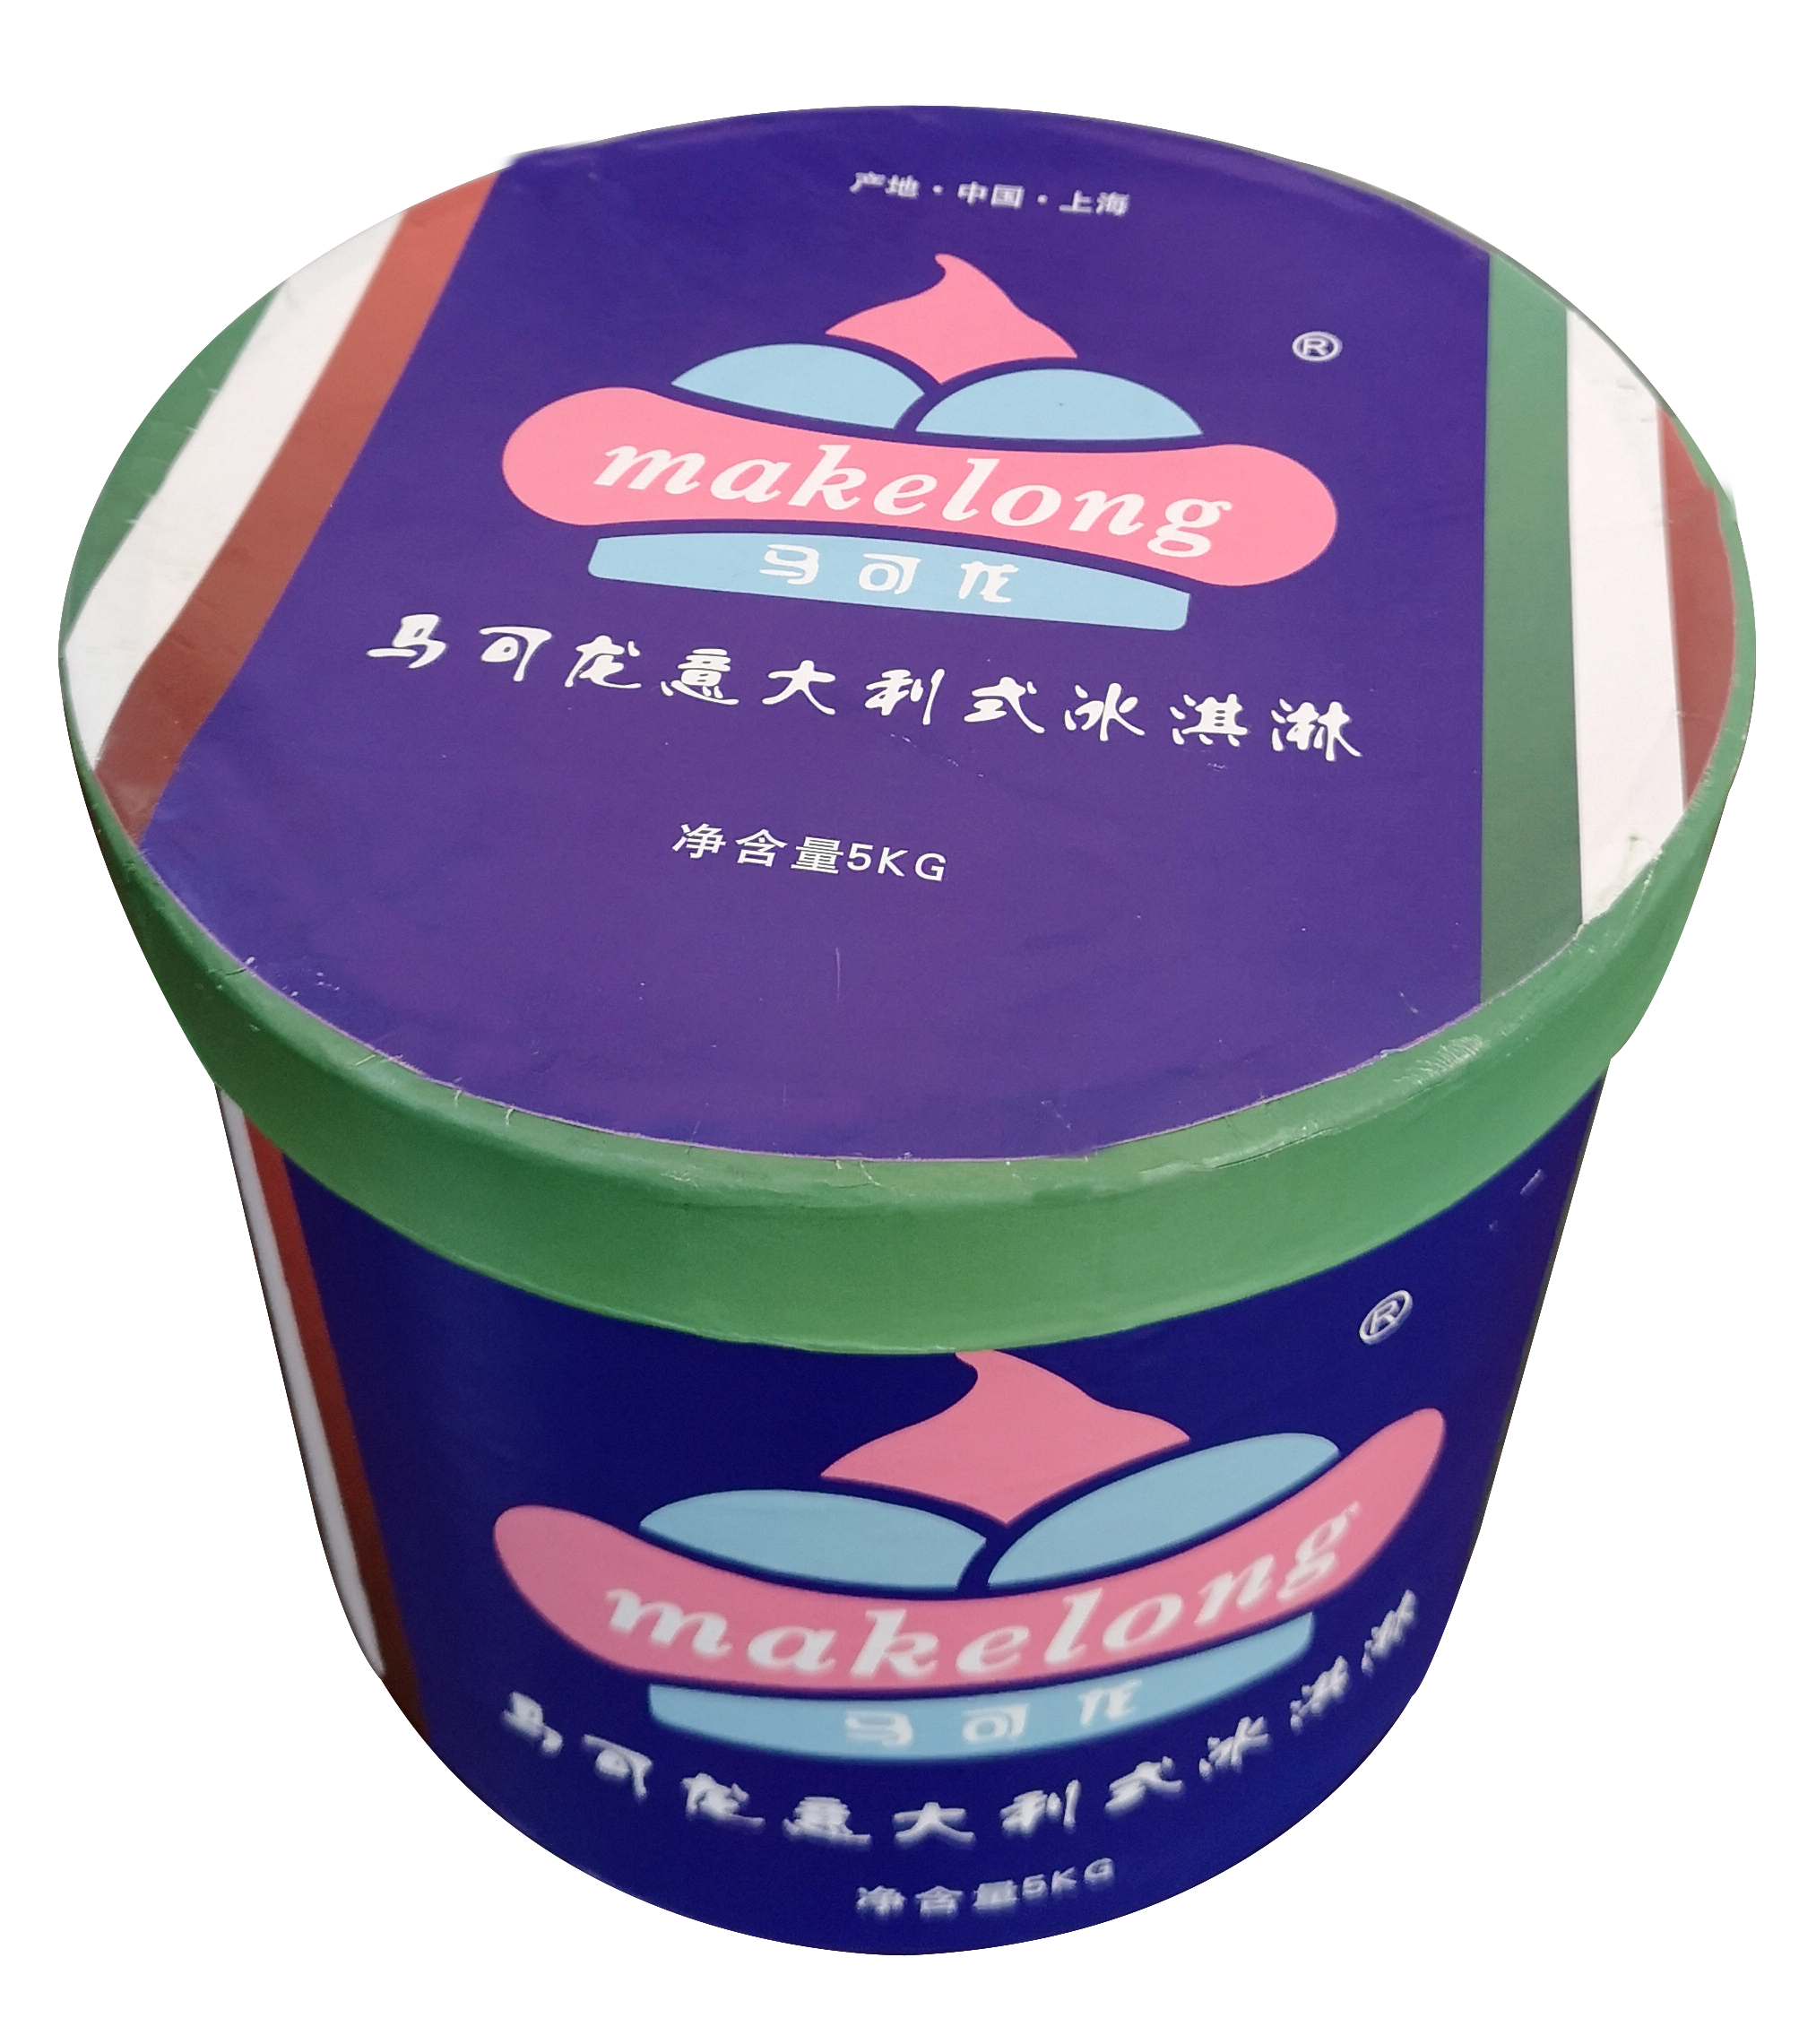 上海市上海市马可龙冰淇淋桶装厂家上海市马可龙冰淇淋桶装厂家直销、价格实惠、厂家批发【馥颂食品（上海）有限公司】